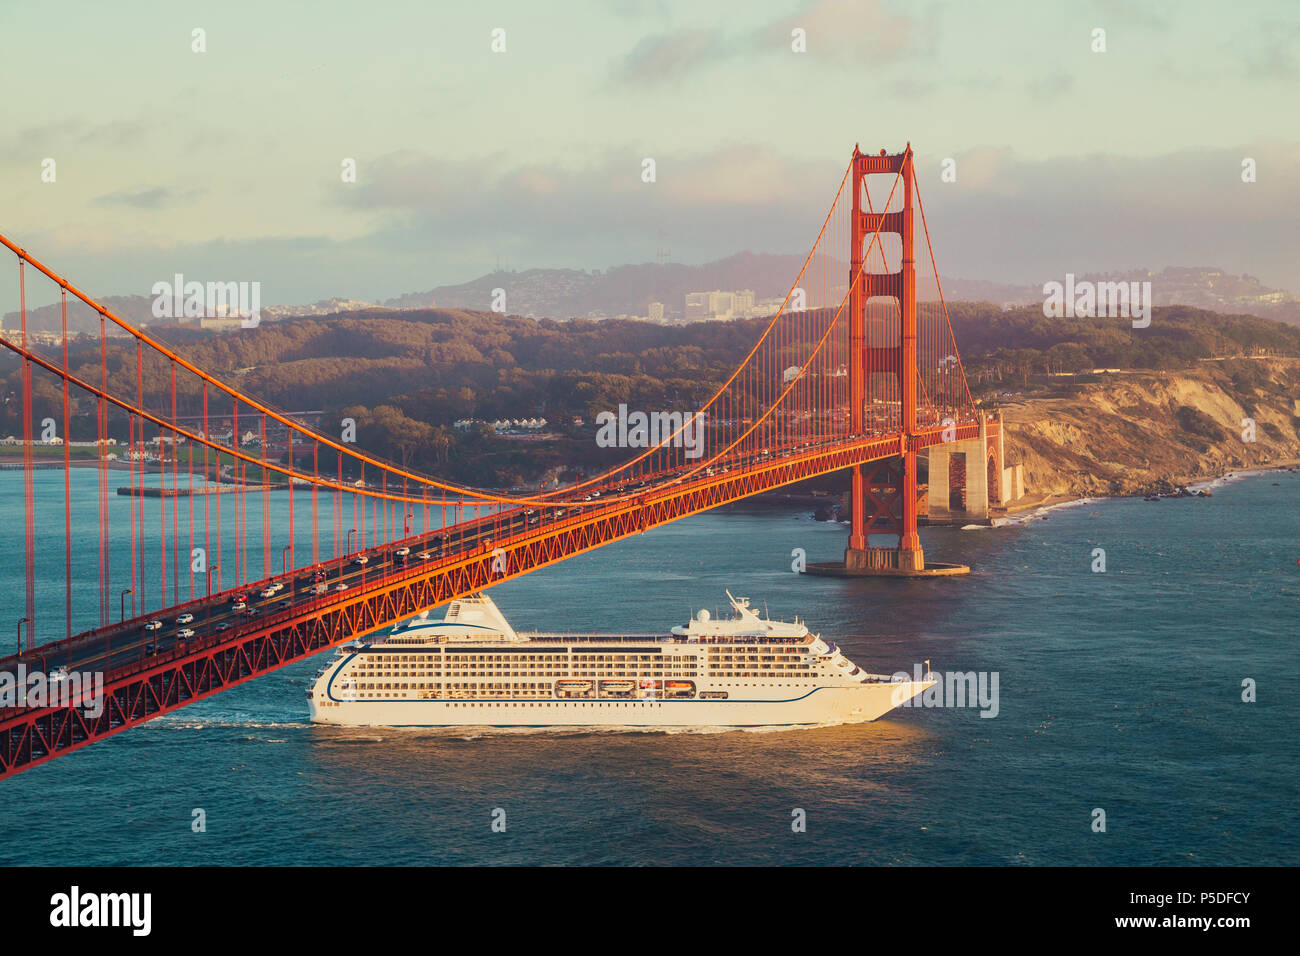 Schönen Panoramablick auf Kreuzfahrtschiff, die berühmte Golden Gate Bridge mit Blick auf die Skyline von San Francisco im Hintergrund in wunderschönen goldenen Eveni Stockfoto